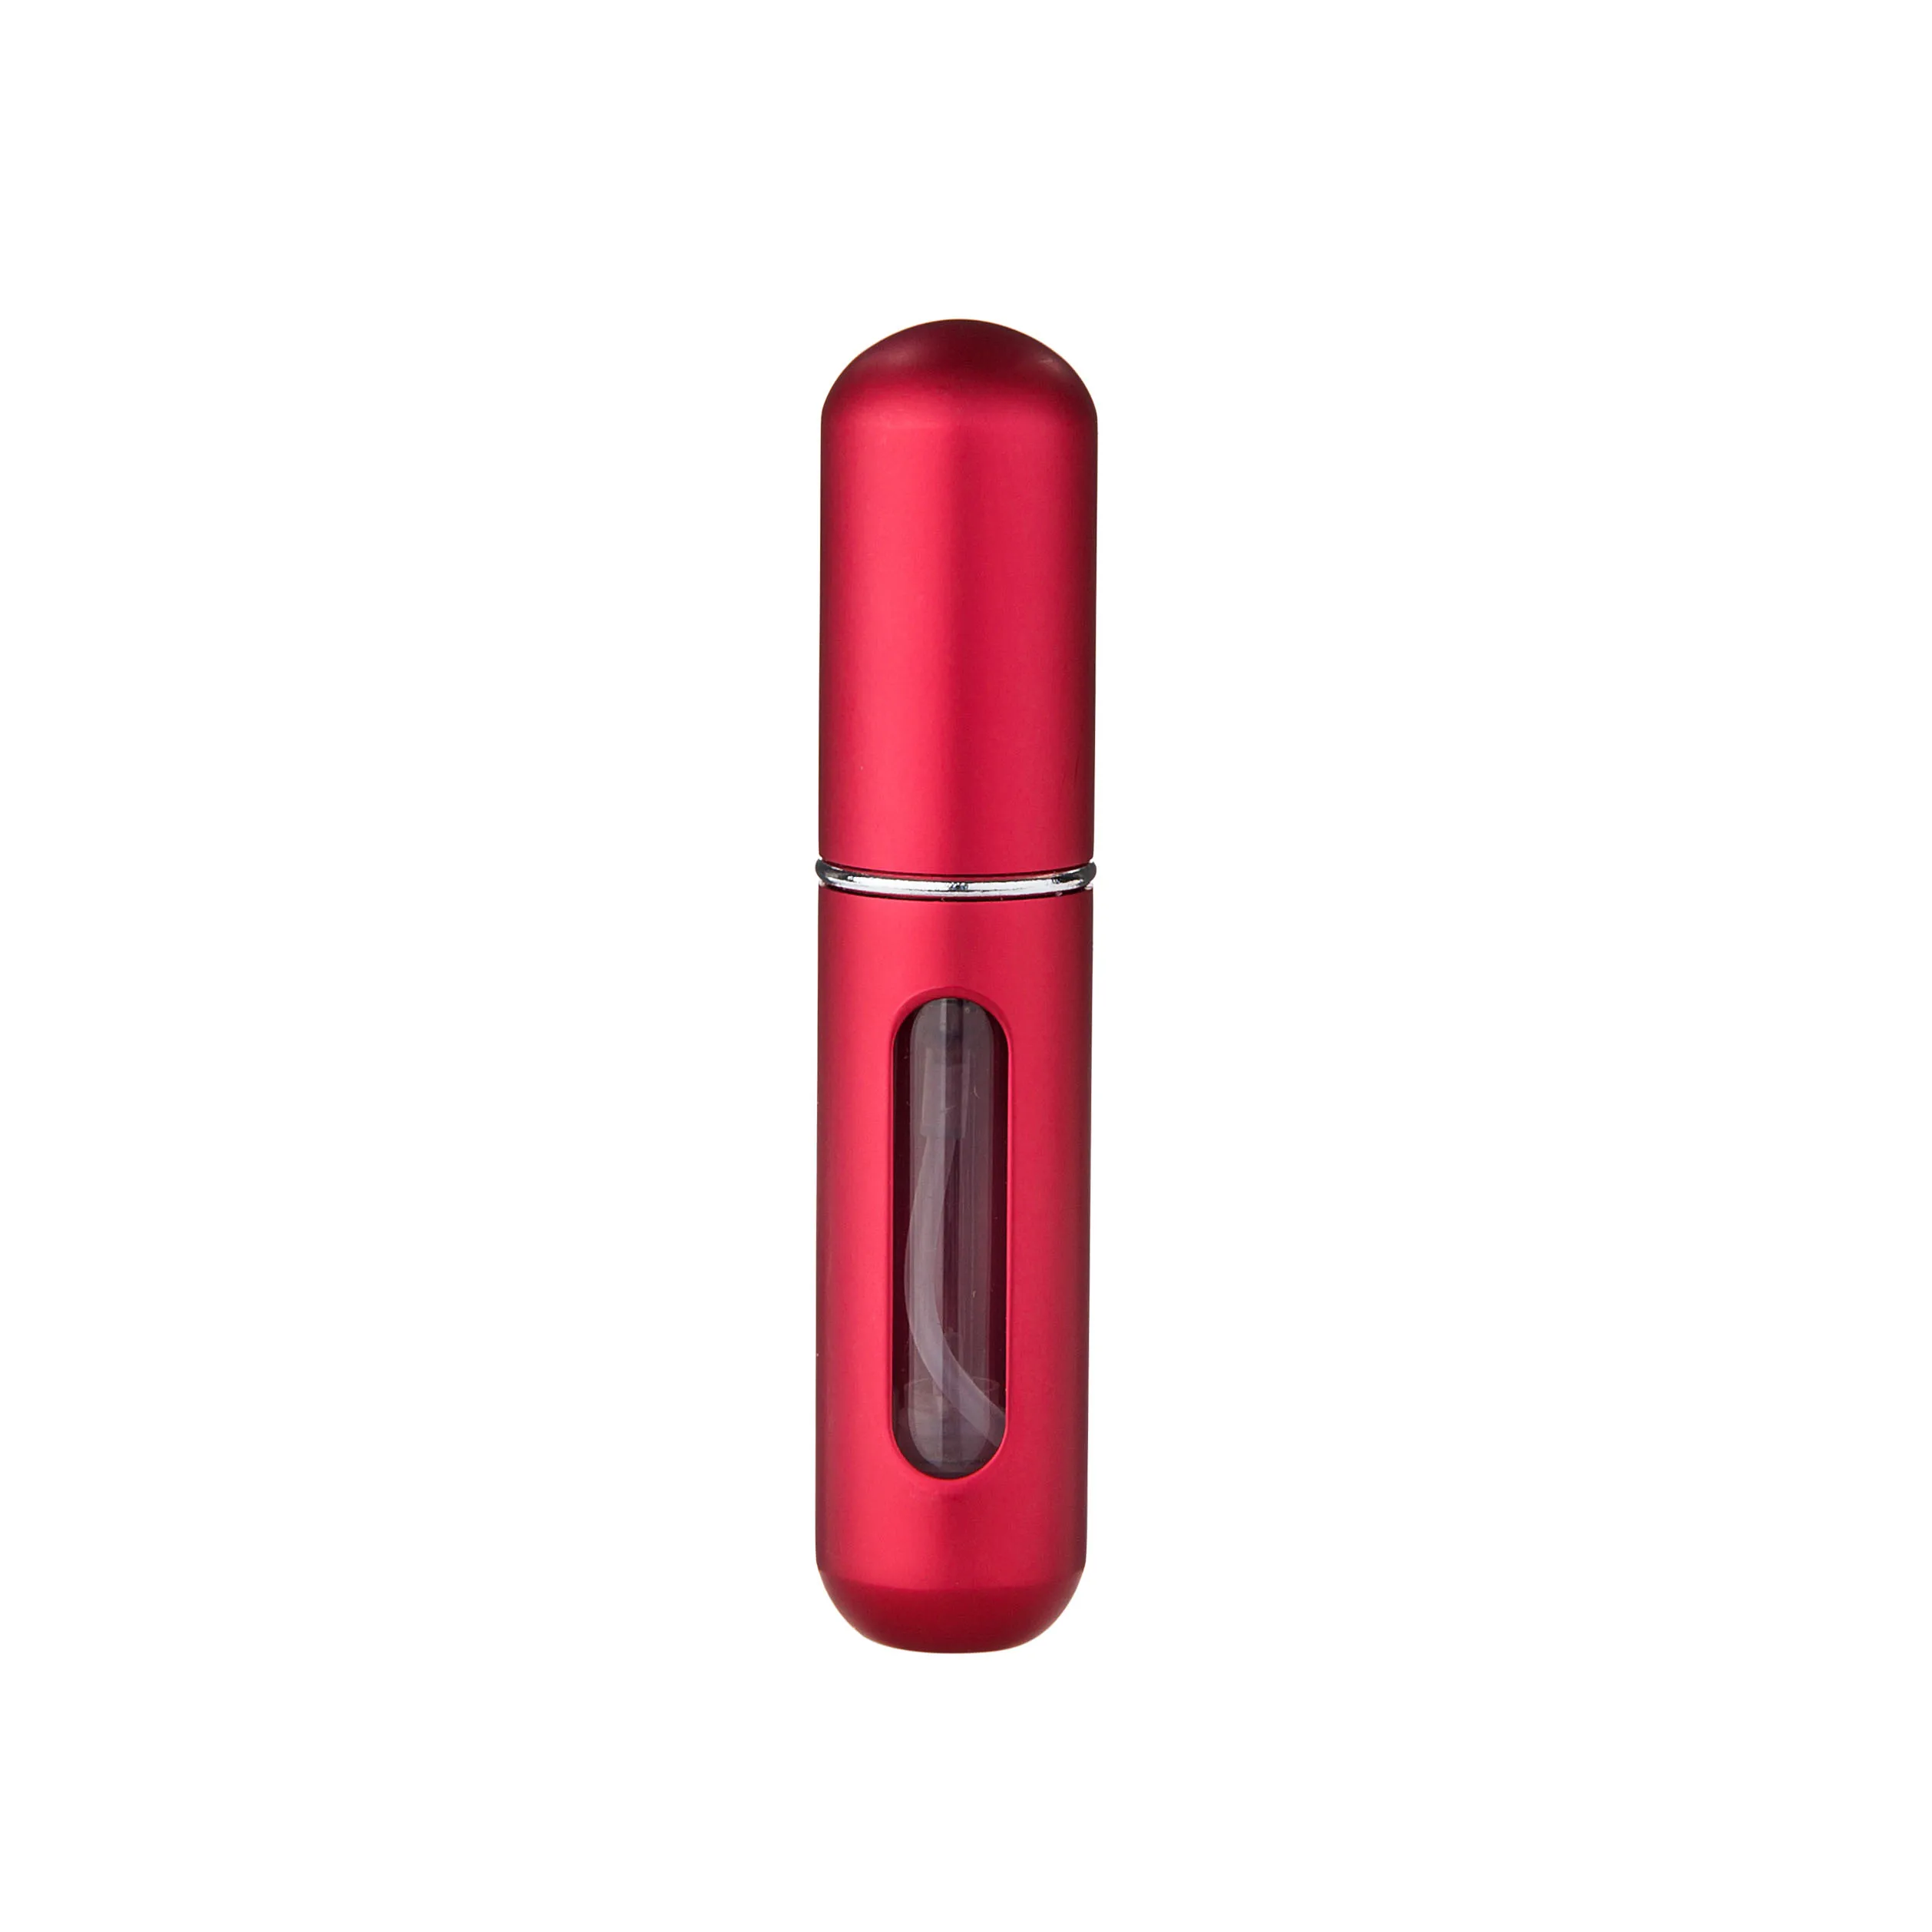 MUBTF-5 мл портативный мини многоразовый флакон духов с распылителем ароматизатор насос пустые косметические контейнеры распылитель бутылка - Цвет: red